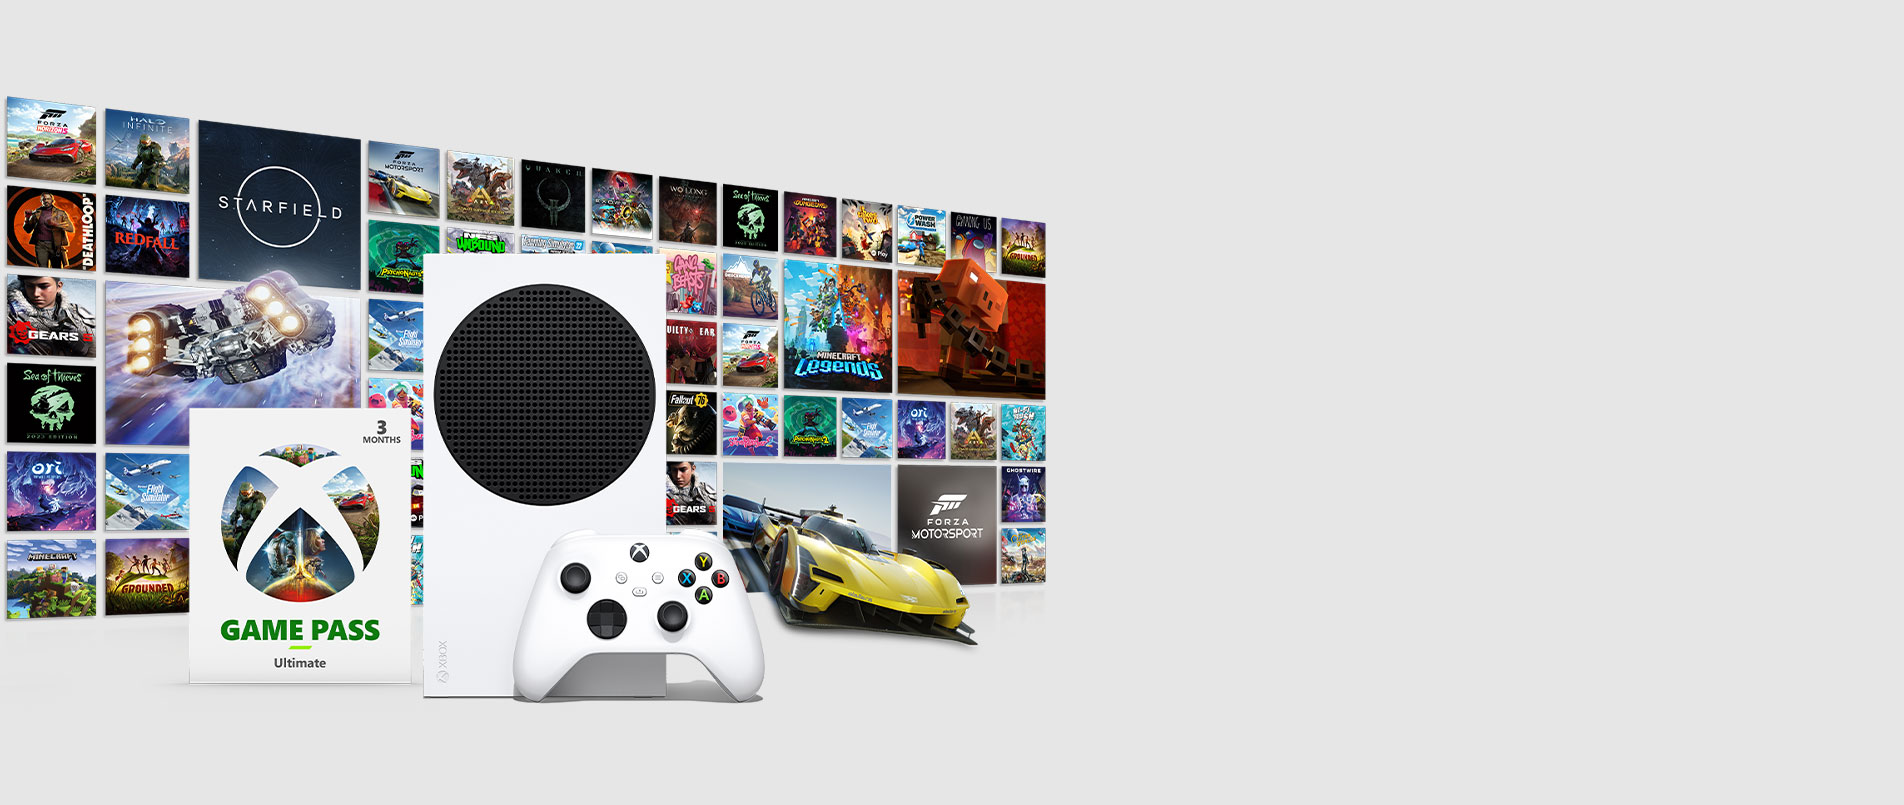 Xbox Game Pass Core é compatível com o Xbox 360? : r/XboxBrasil